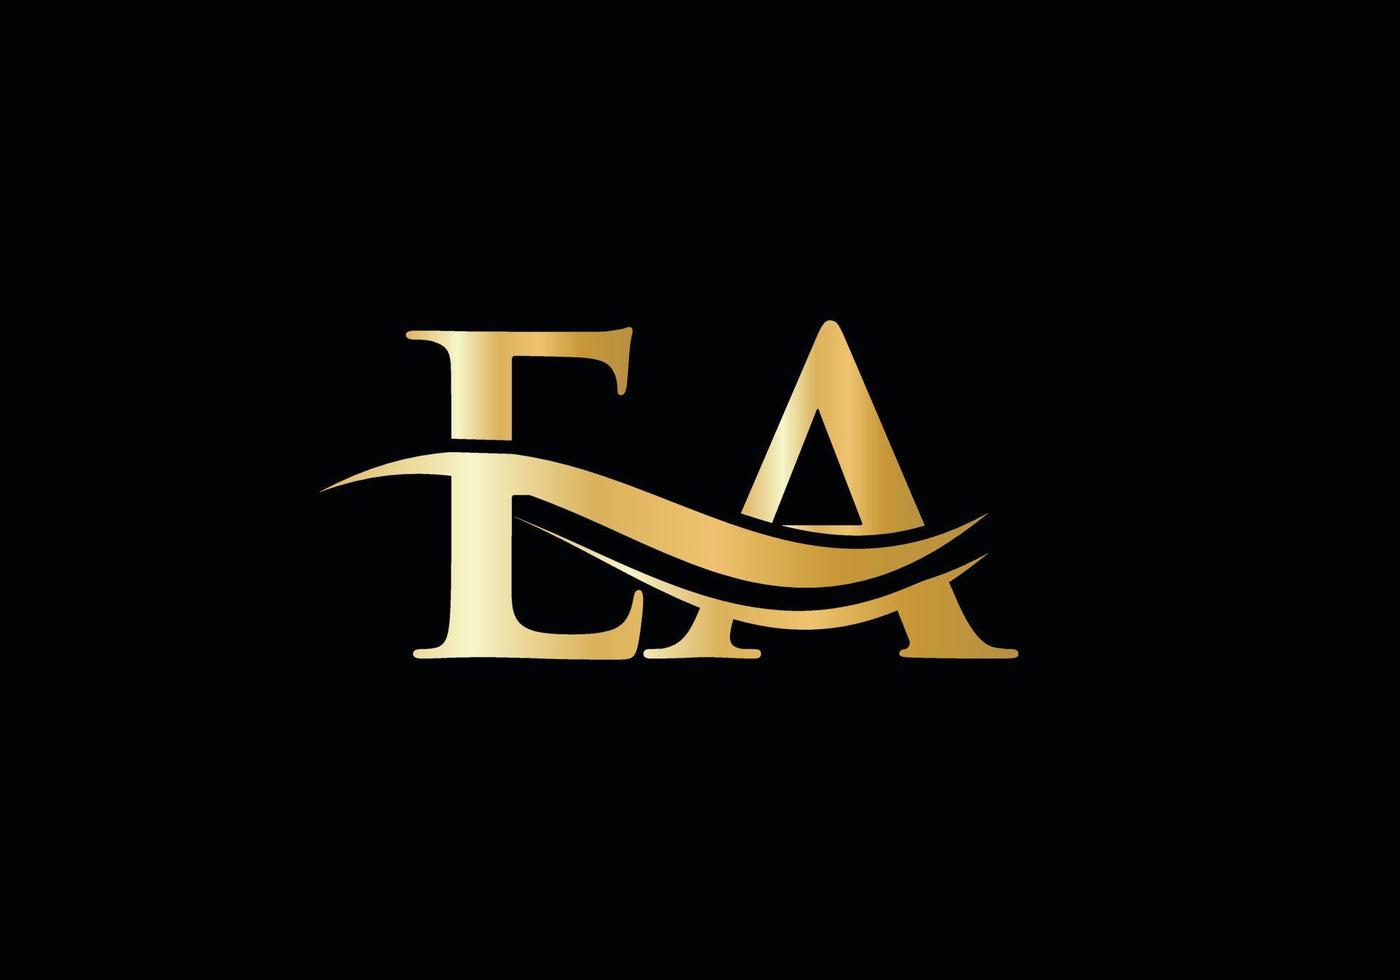 plantilla de vector de logotipo vinculado a la letra inicial ea. diseño del logotipo de la letra swoosh ea. diseño de logotipo ea con moda moderna